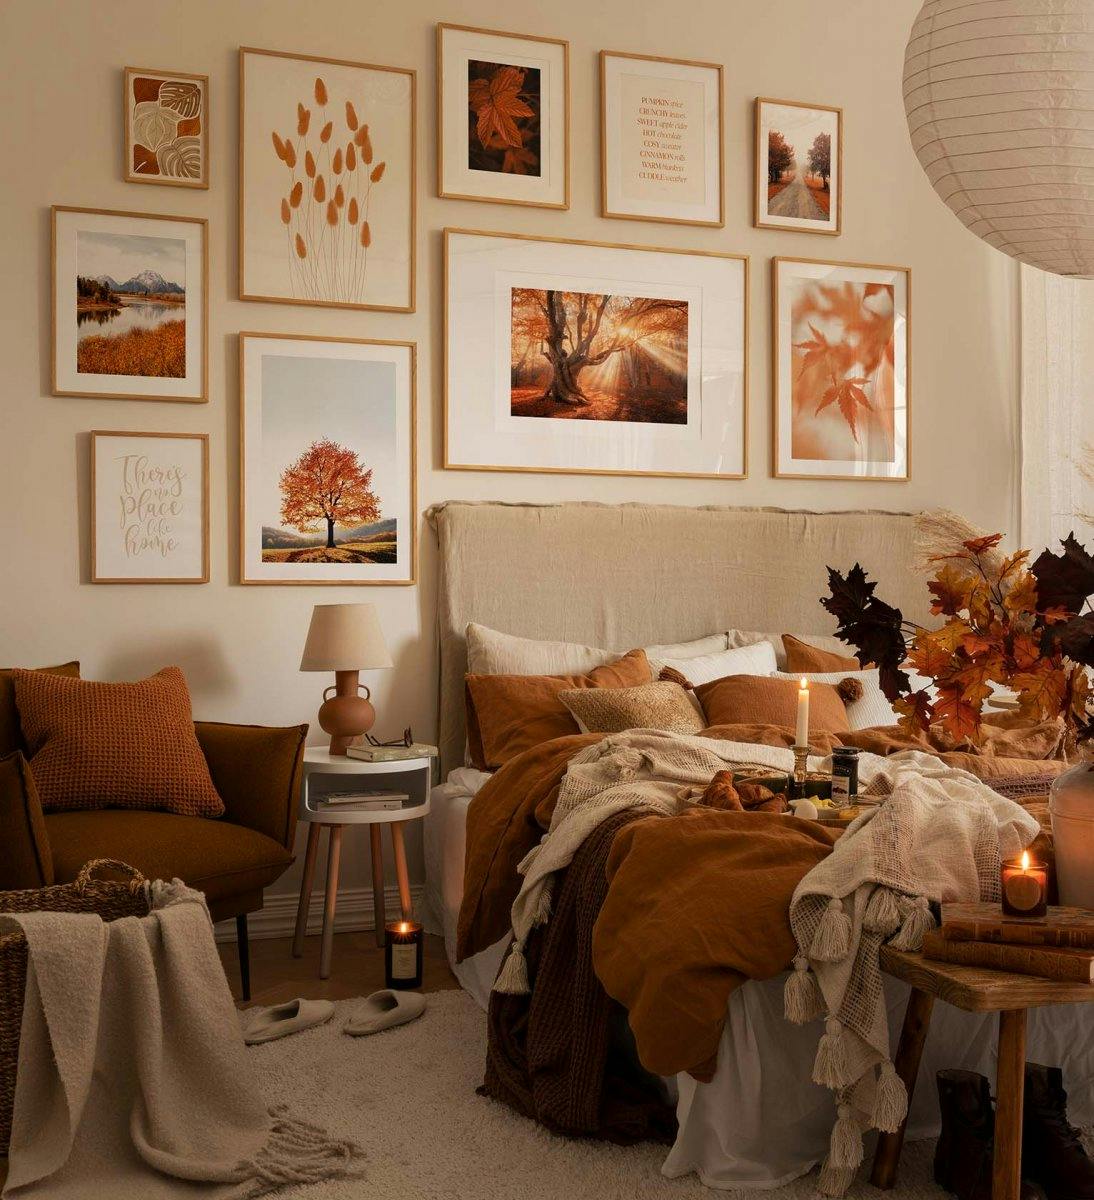 Galerijwand met inspiratie uit de herfst met prints en foto's in oranje en eiken kaders voor slaapkamer